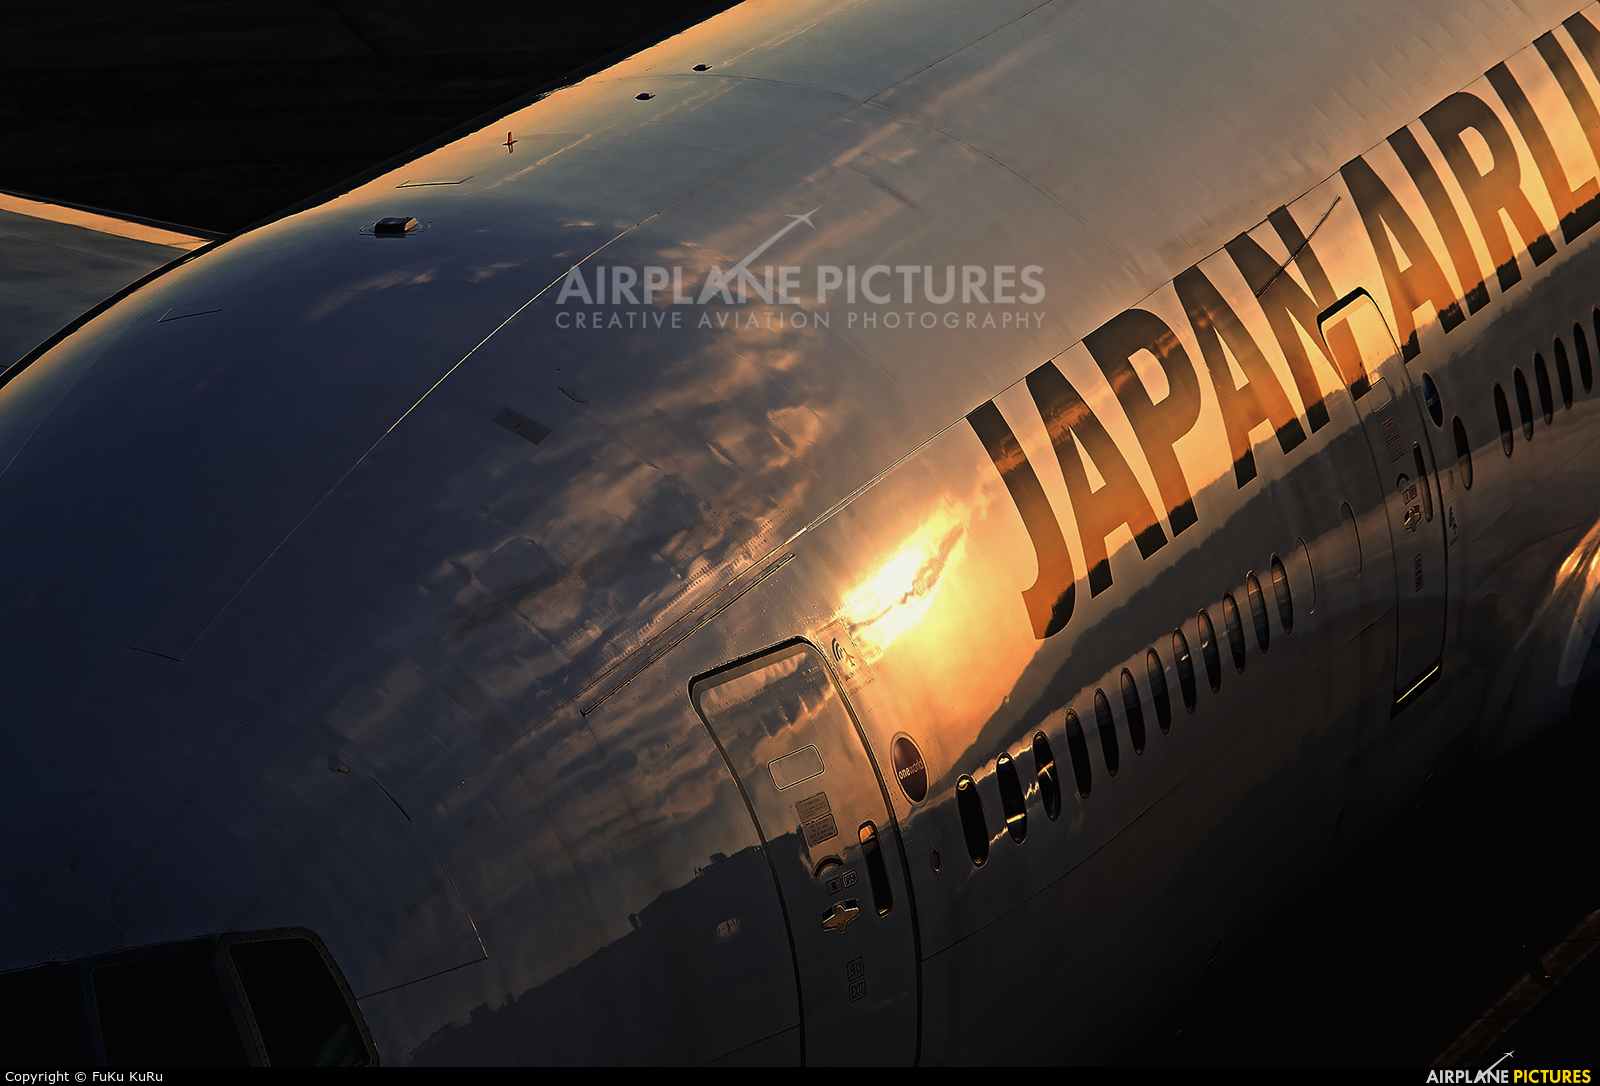 JAL - Japan Airlines JA8977 aircraft at Osaka - Itami Intl